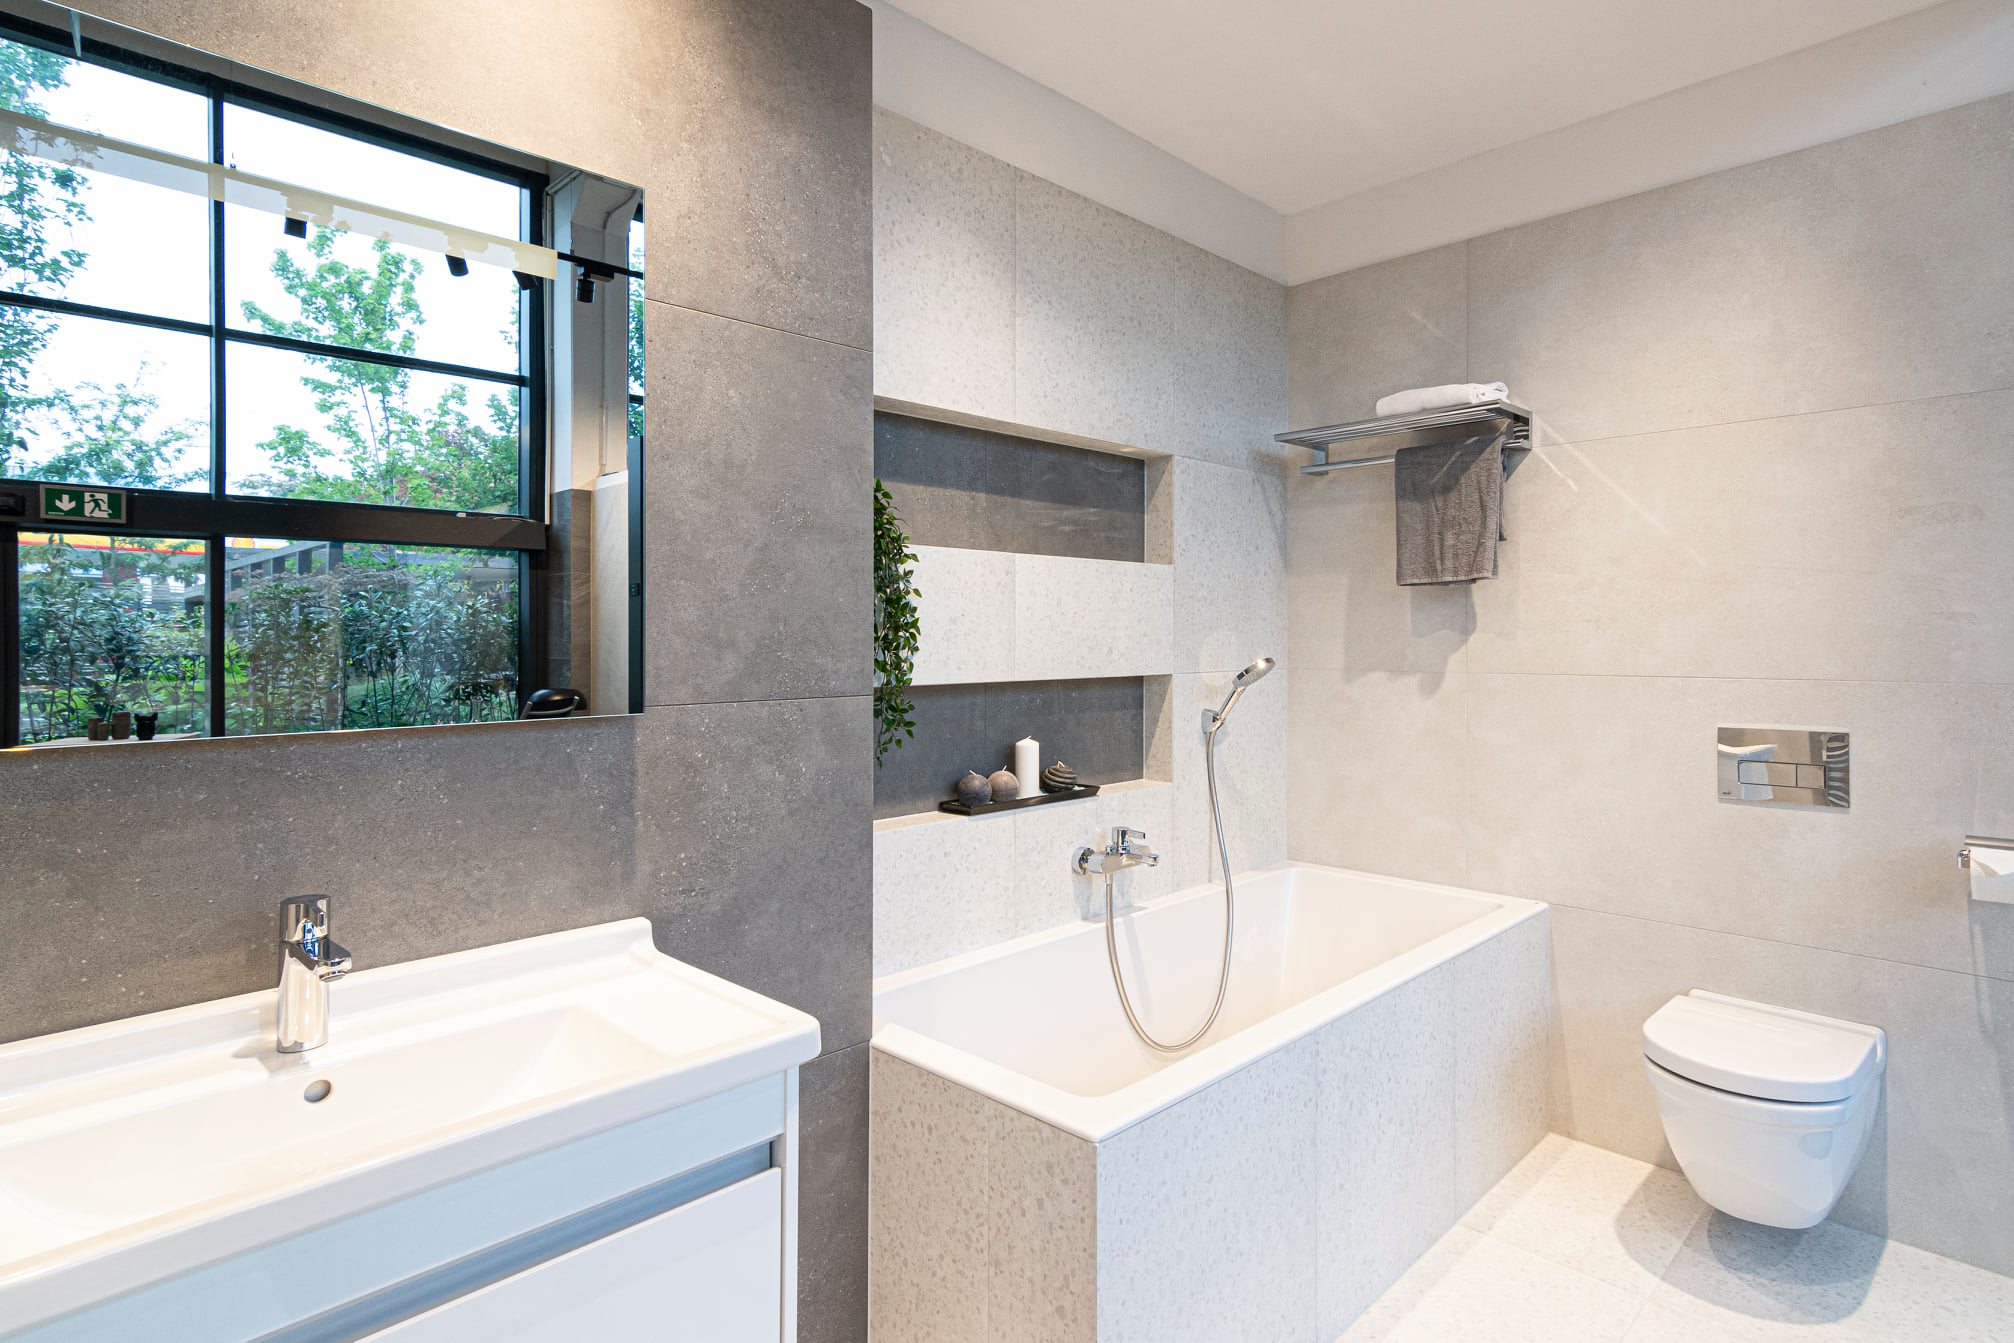 Koupelna ze sérií Terrazzo a Betonico od výrobce RAKO